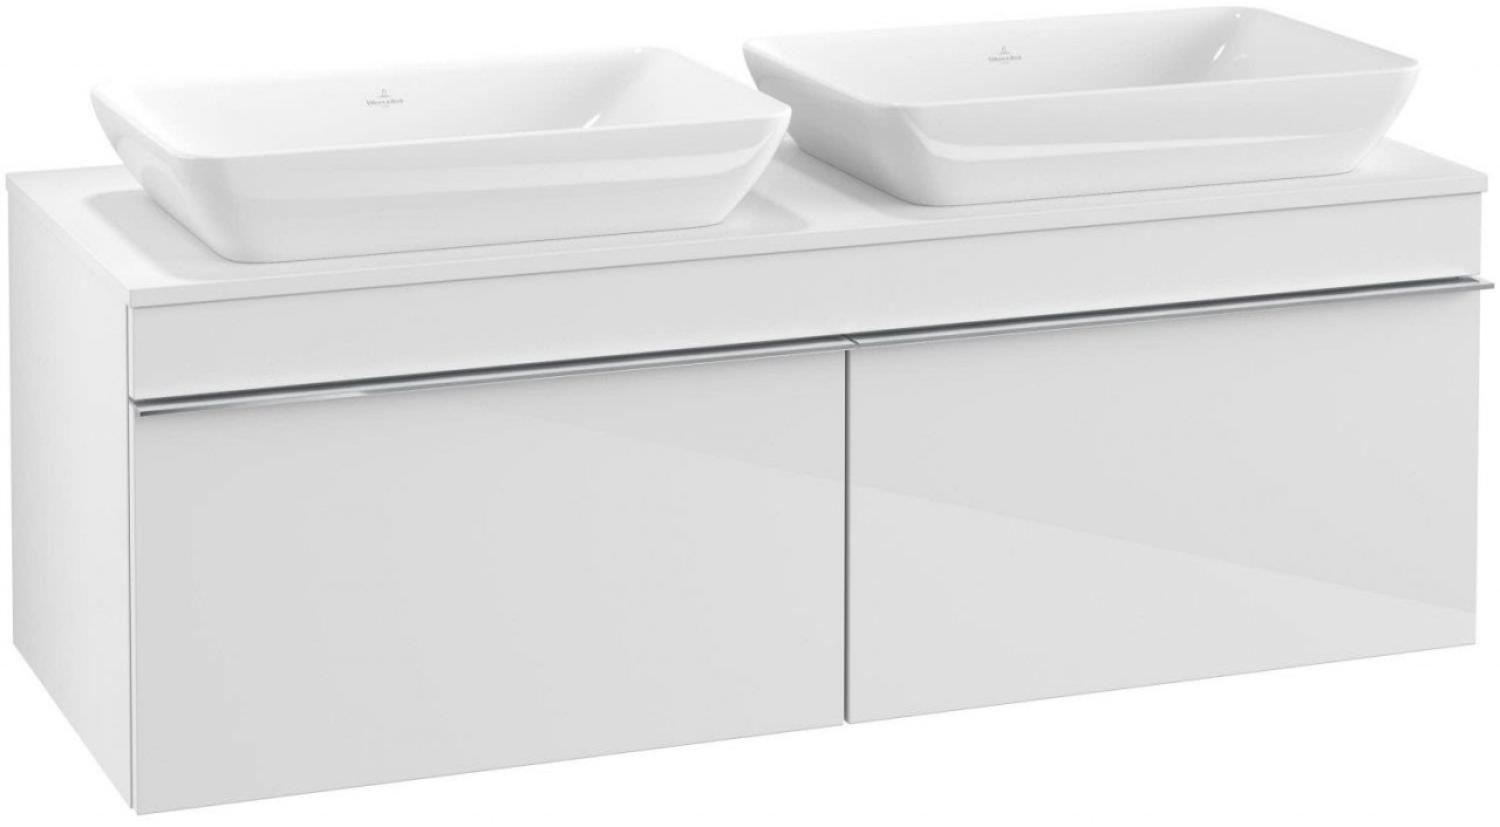 Villeroy & Boch VENTICELLO Waschtischunterschrank für 2 Waschbecken 125 cm breit, Weiß, Griff Weiß Bild 1